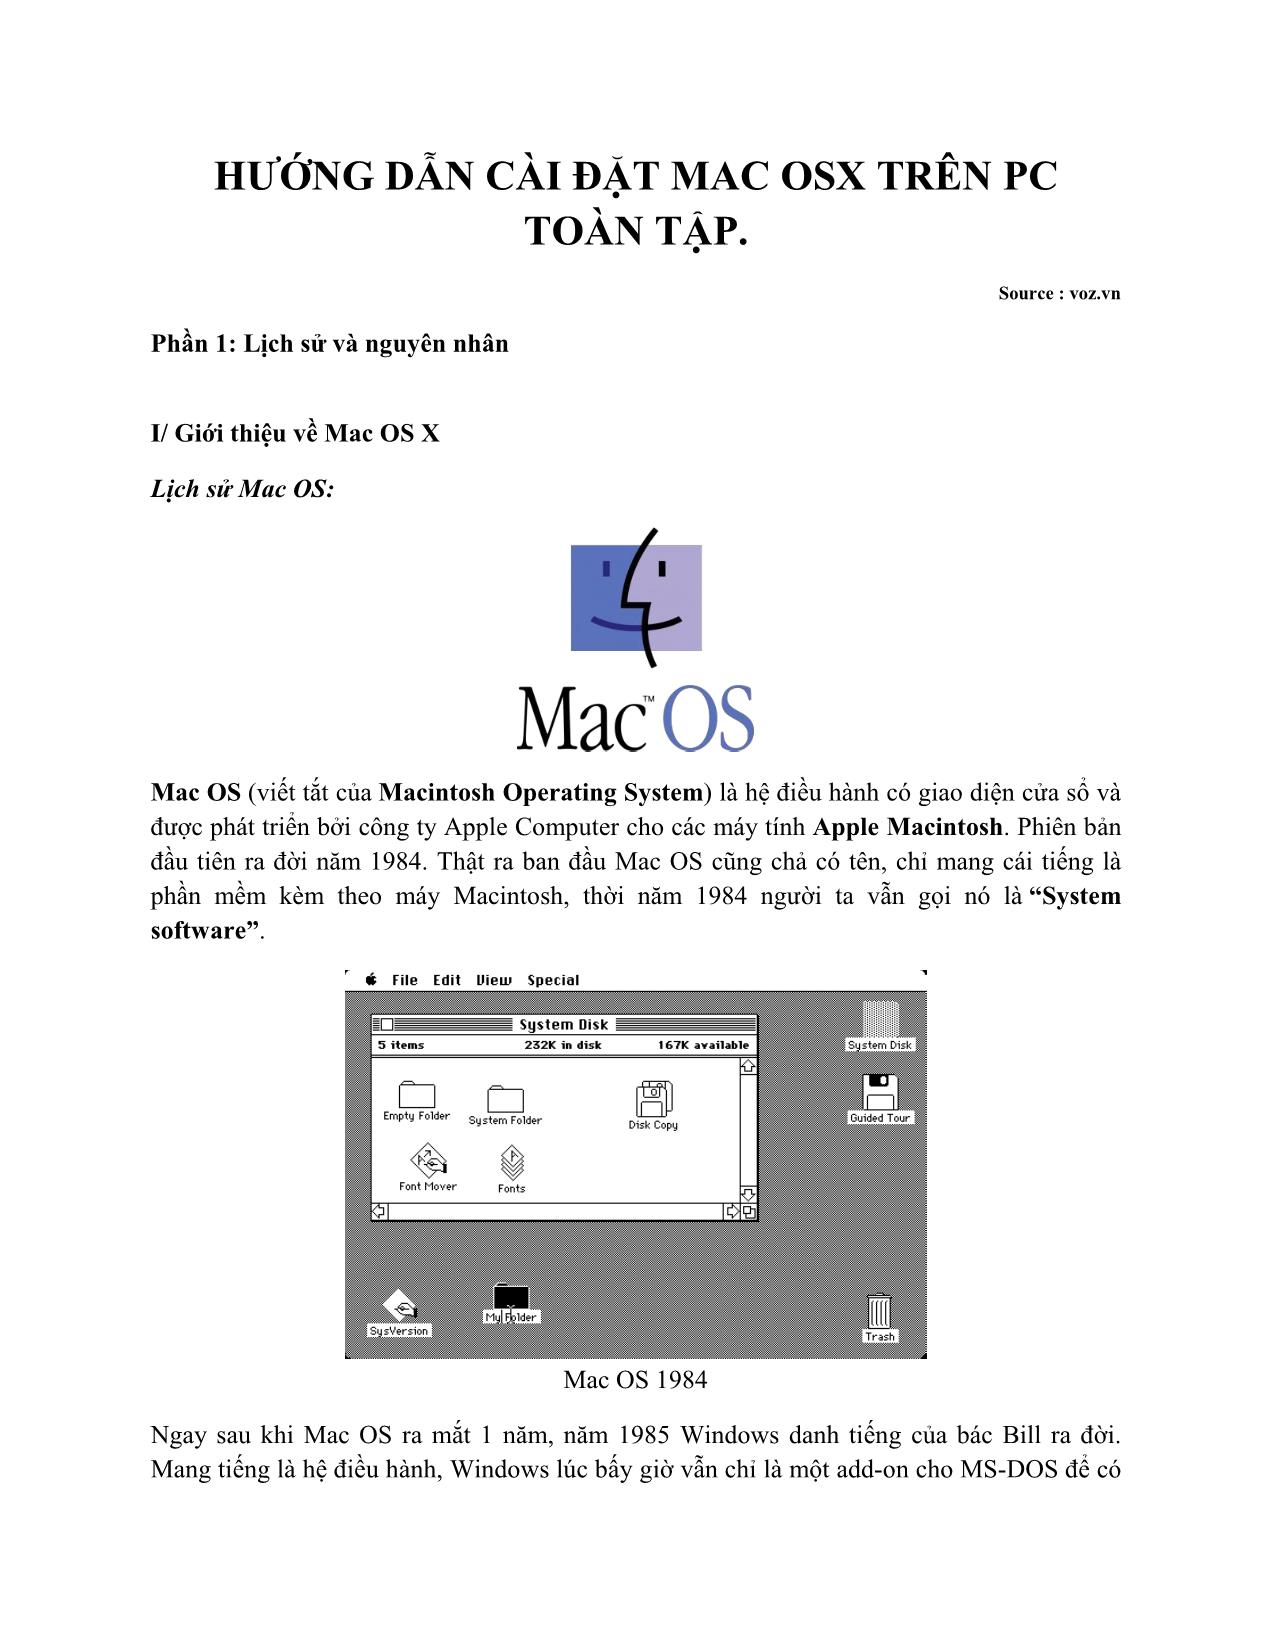 Hướng dẫn cài đặt MAC OSX trên PC toàn tập trang 1